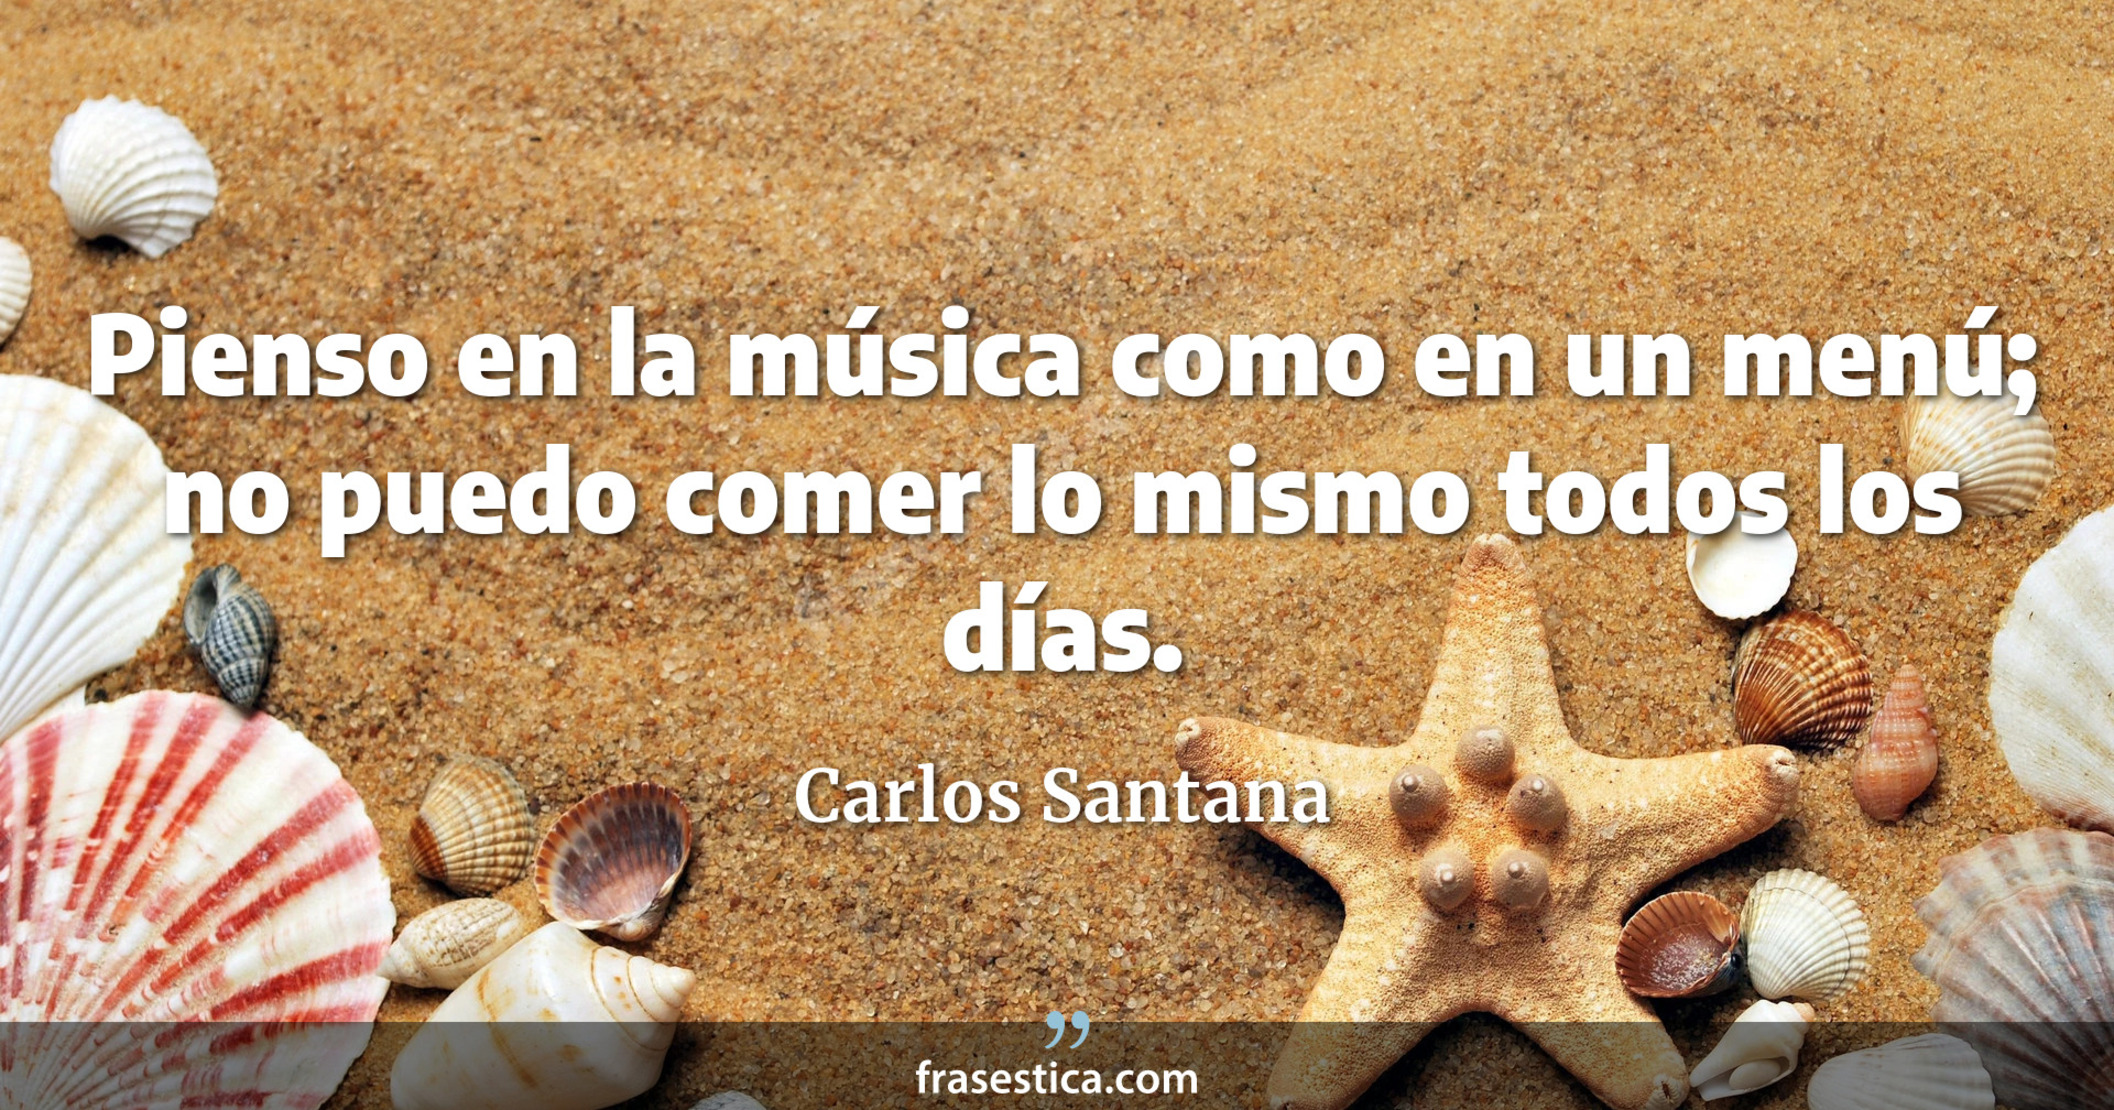 Pienso en la música como en un menú; no puedo comer lo mismo todos los días. - Carlos Santana